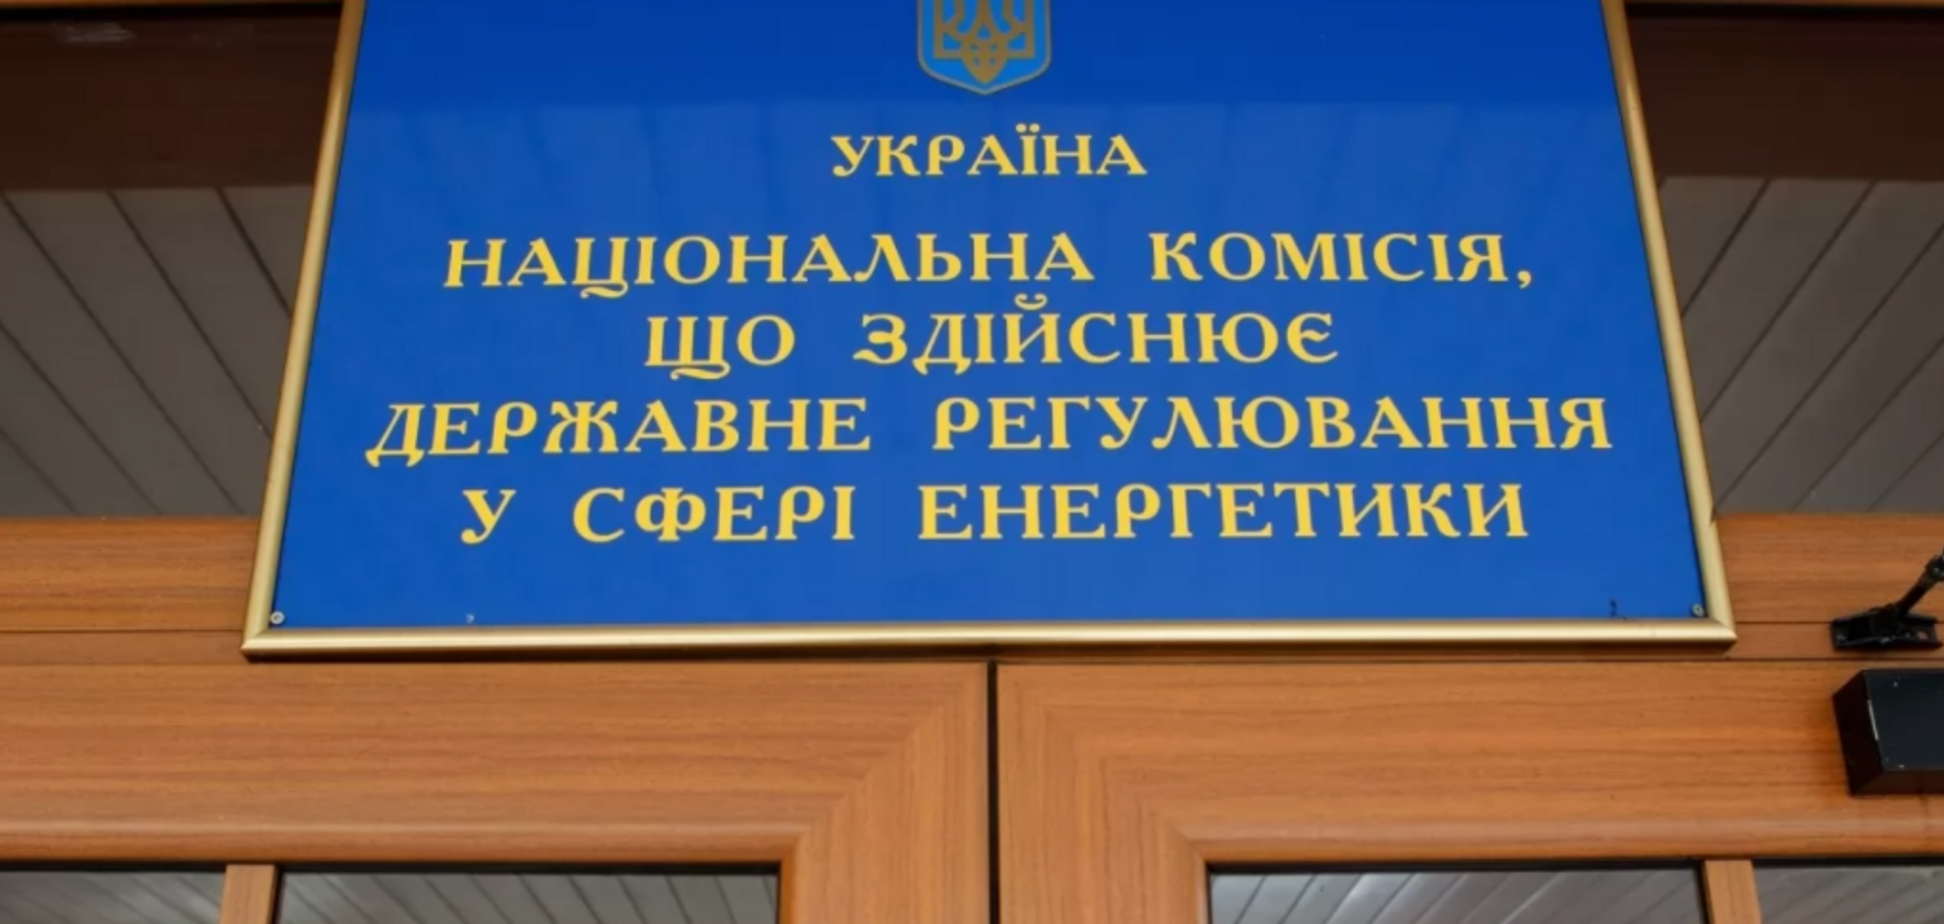 НКРЭКУ аннулировала лицензию компании брата главы комиссии